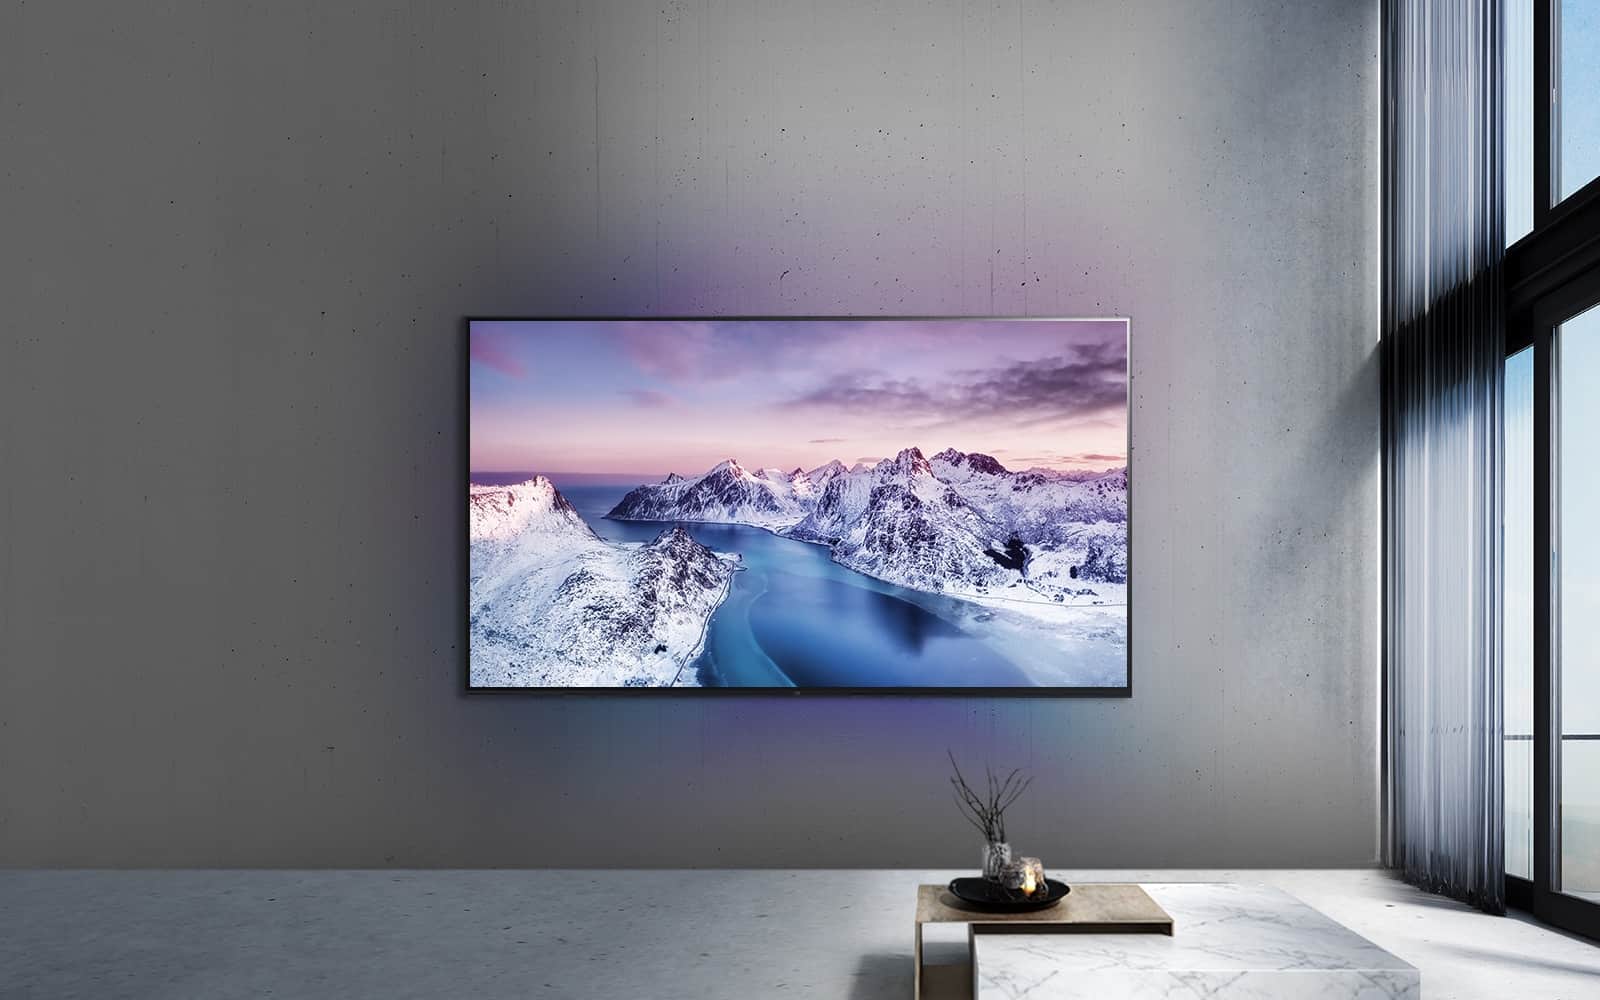 Ultraduży telewizor UHD zawieszony na ścianie za stołem z ozdobami w stylu zen.